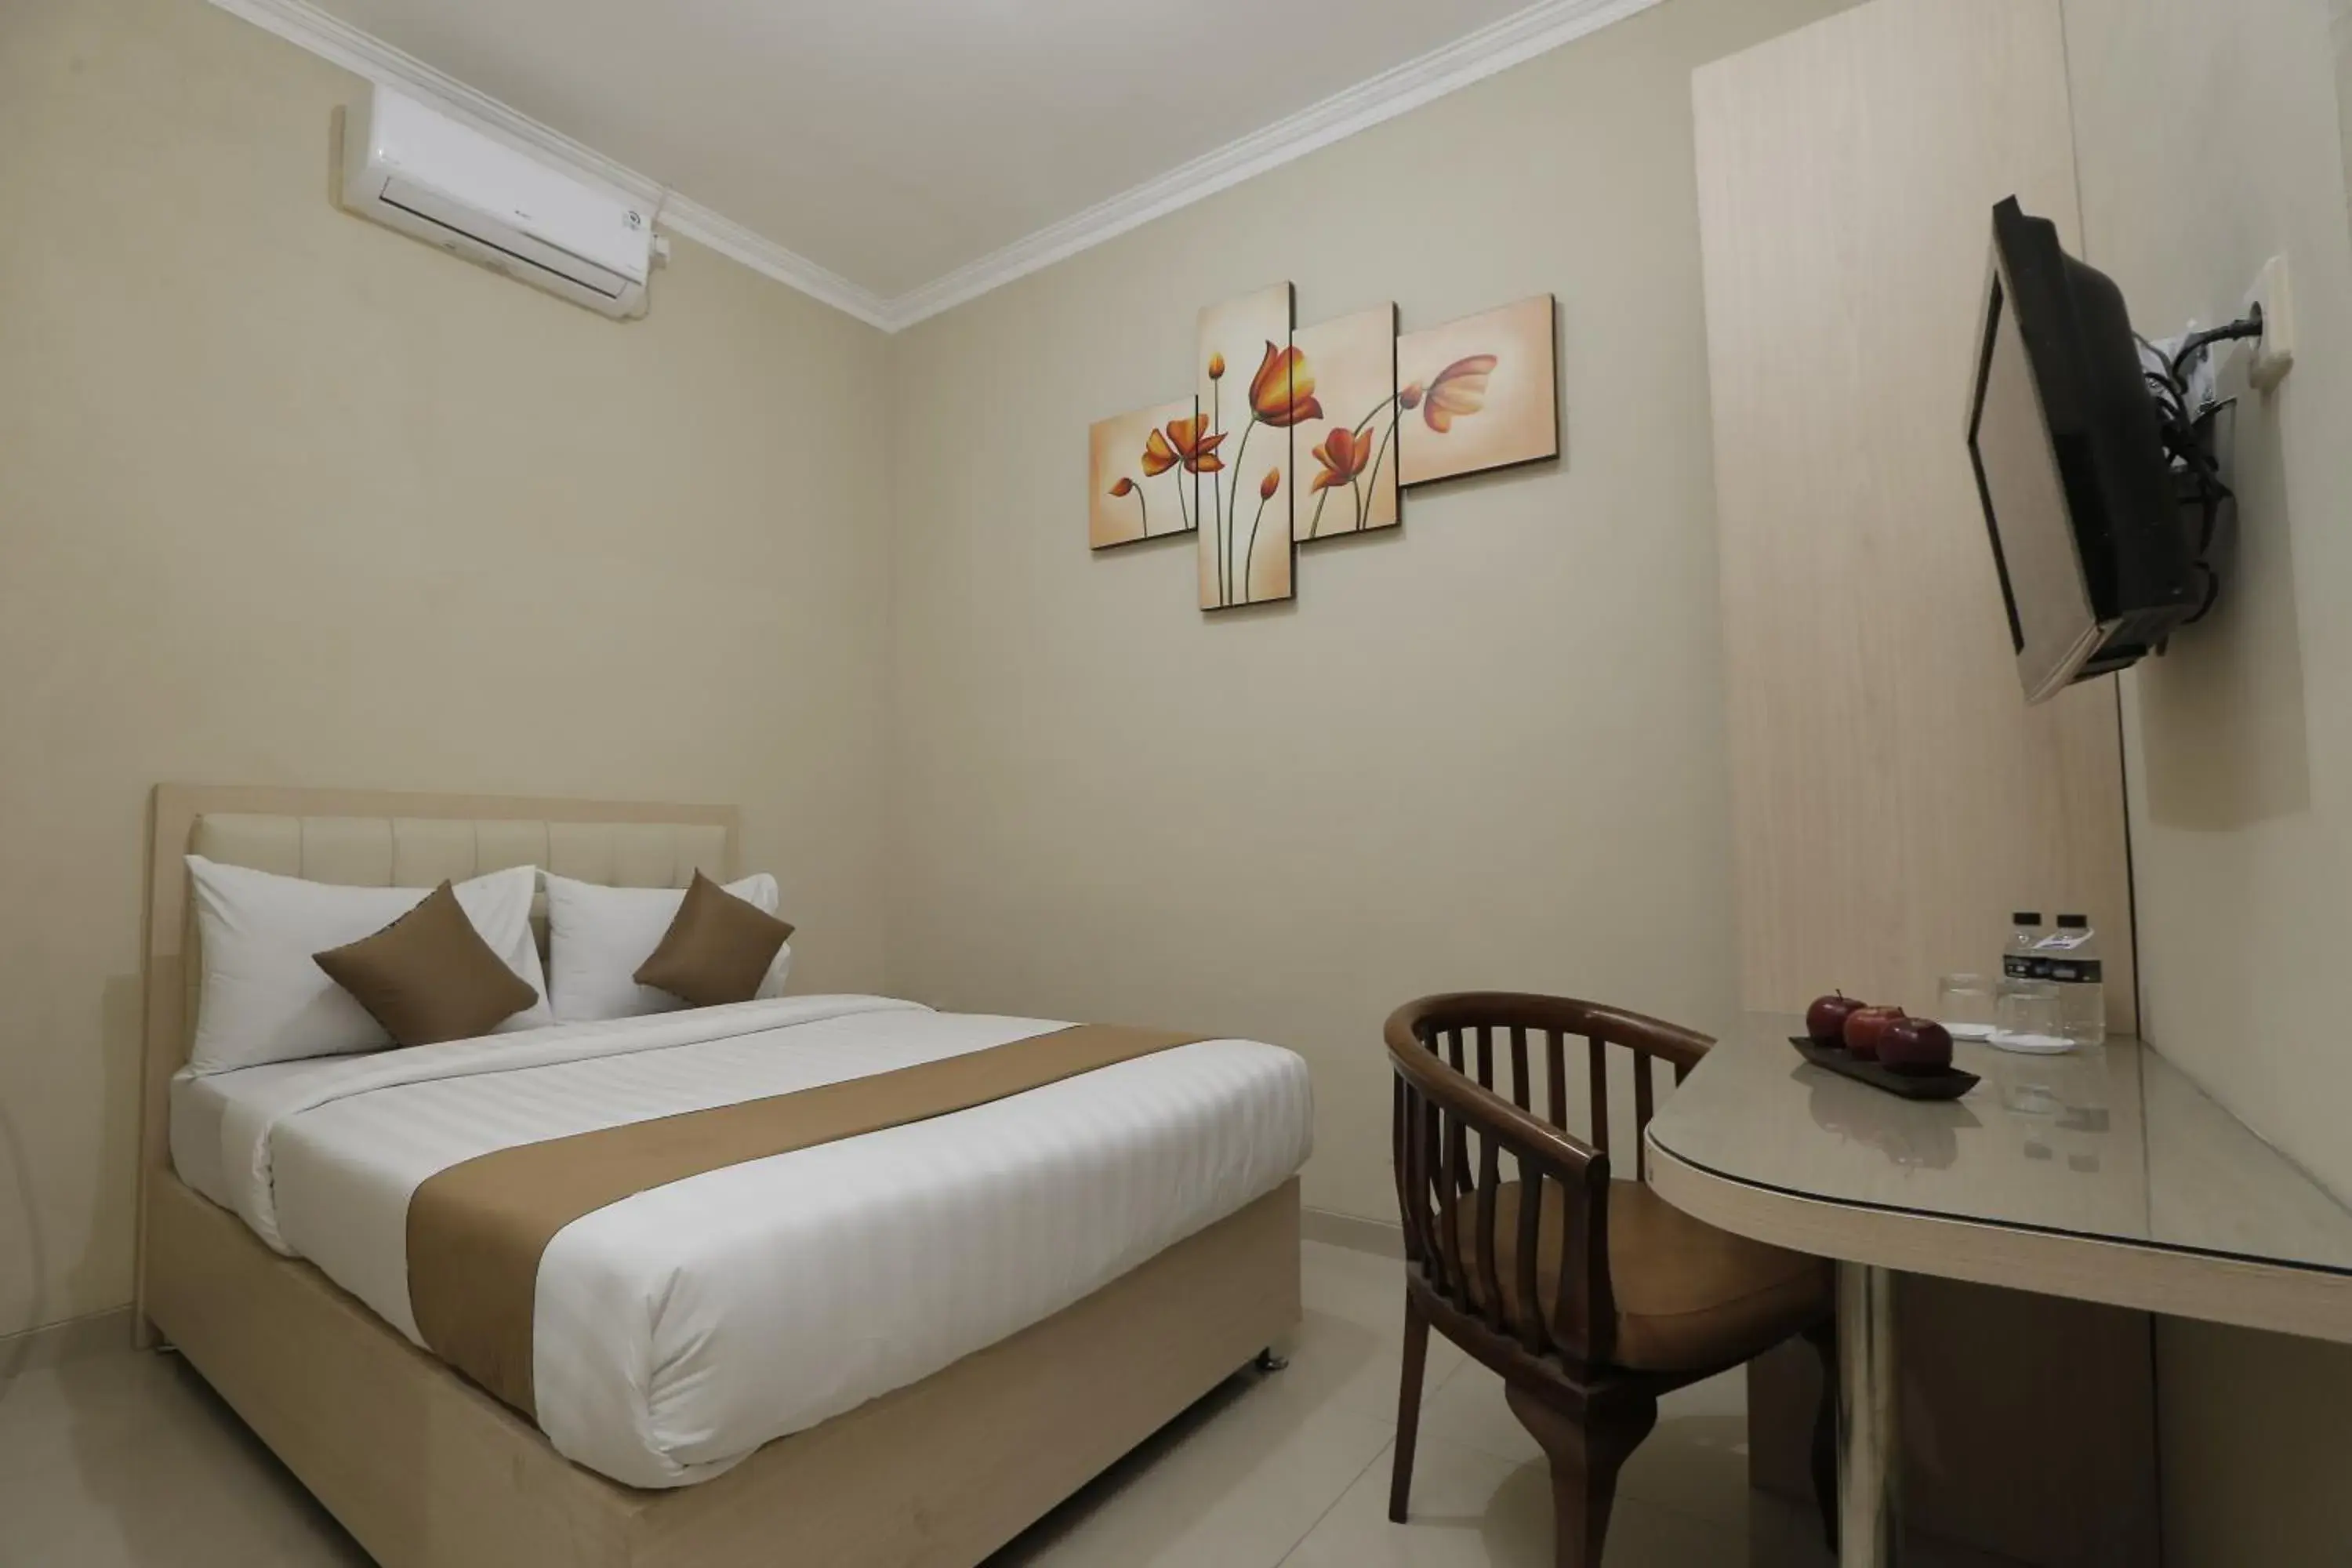 Bed in Hotel Atalie Malioboro by Natt's Hospitality